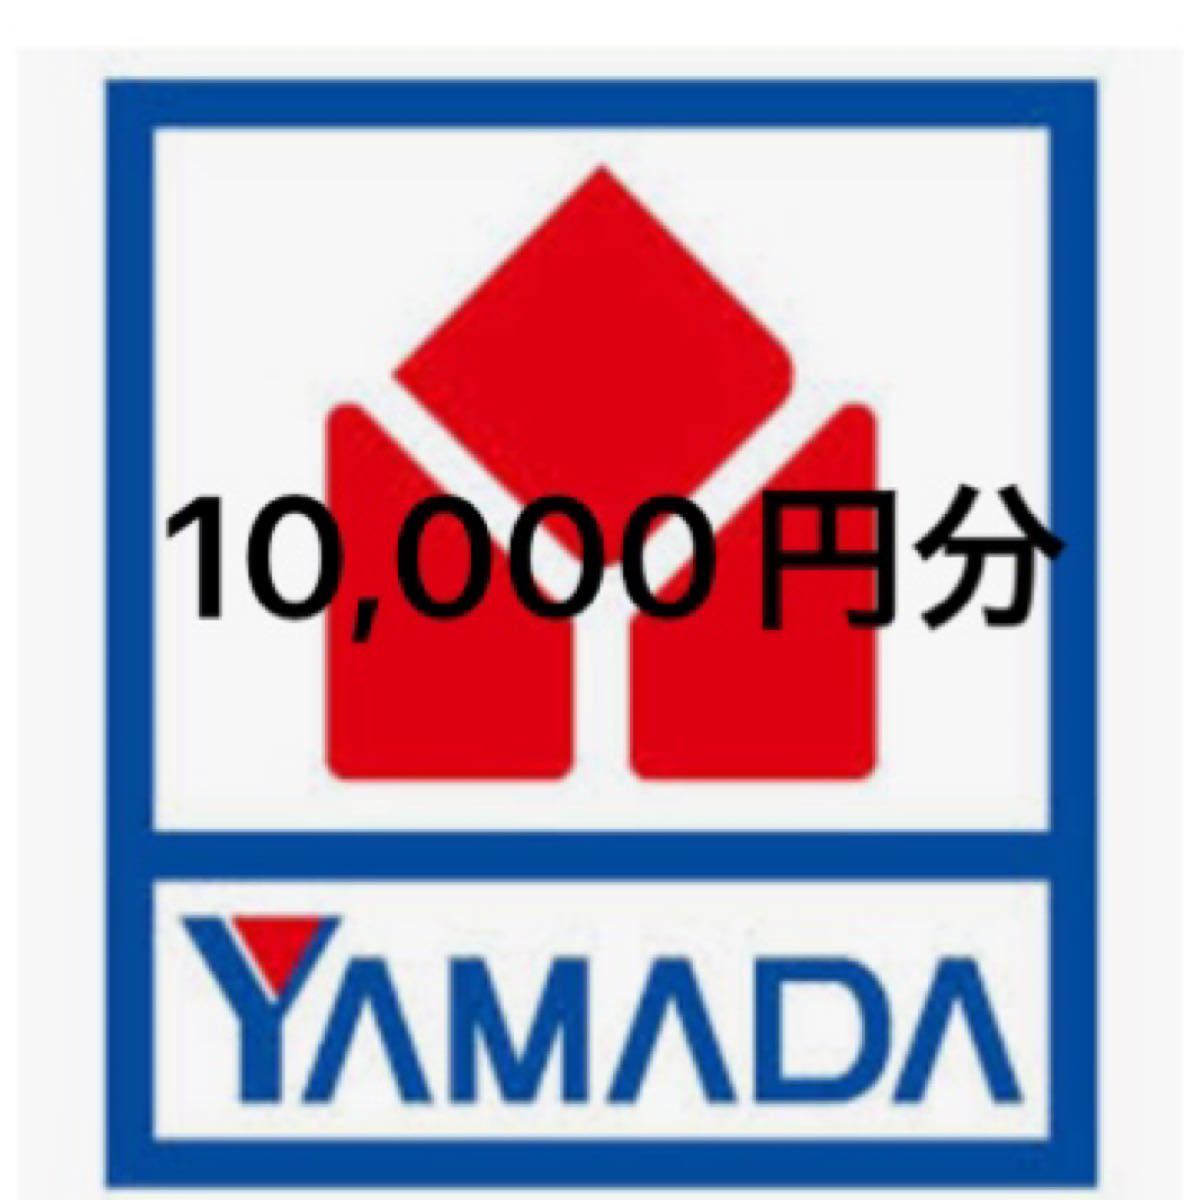 最新 ヤマダ電機 10,000円分 YAMADA redeciadasaude.com.br